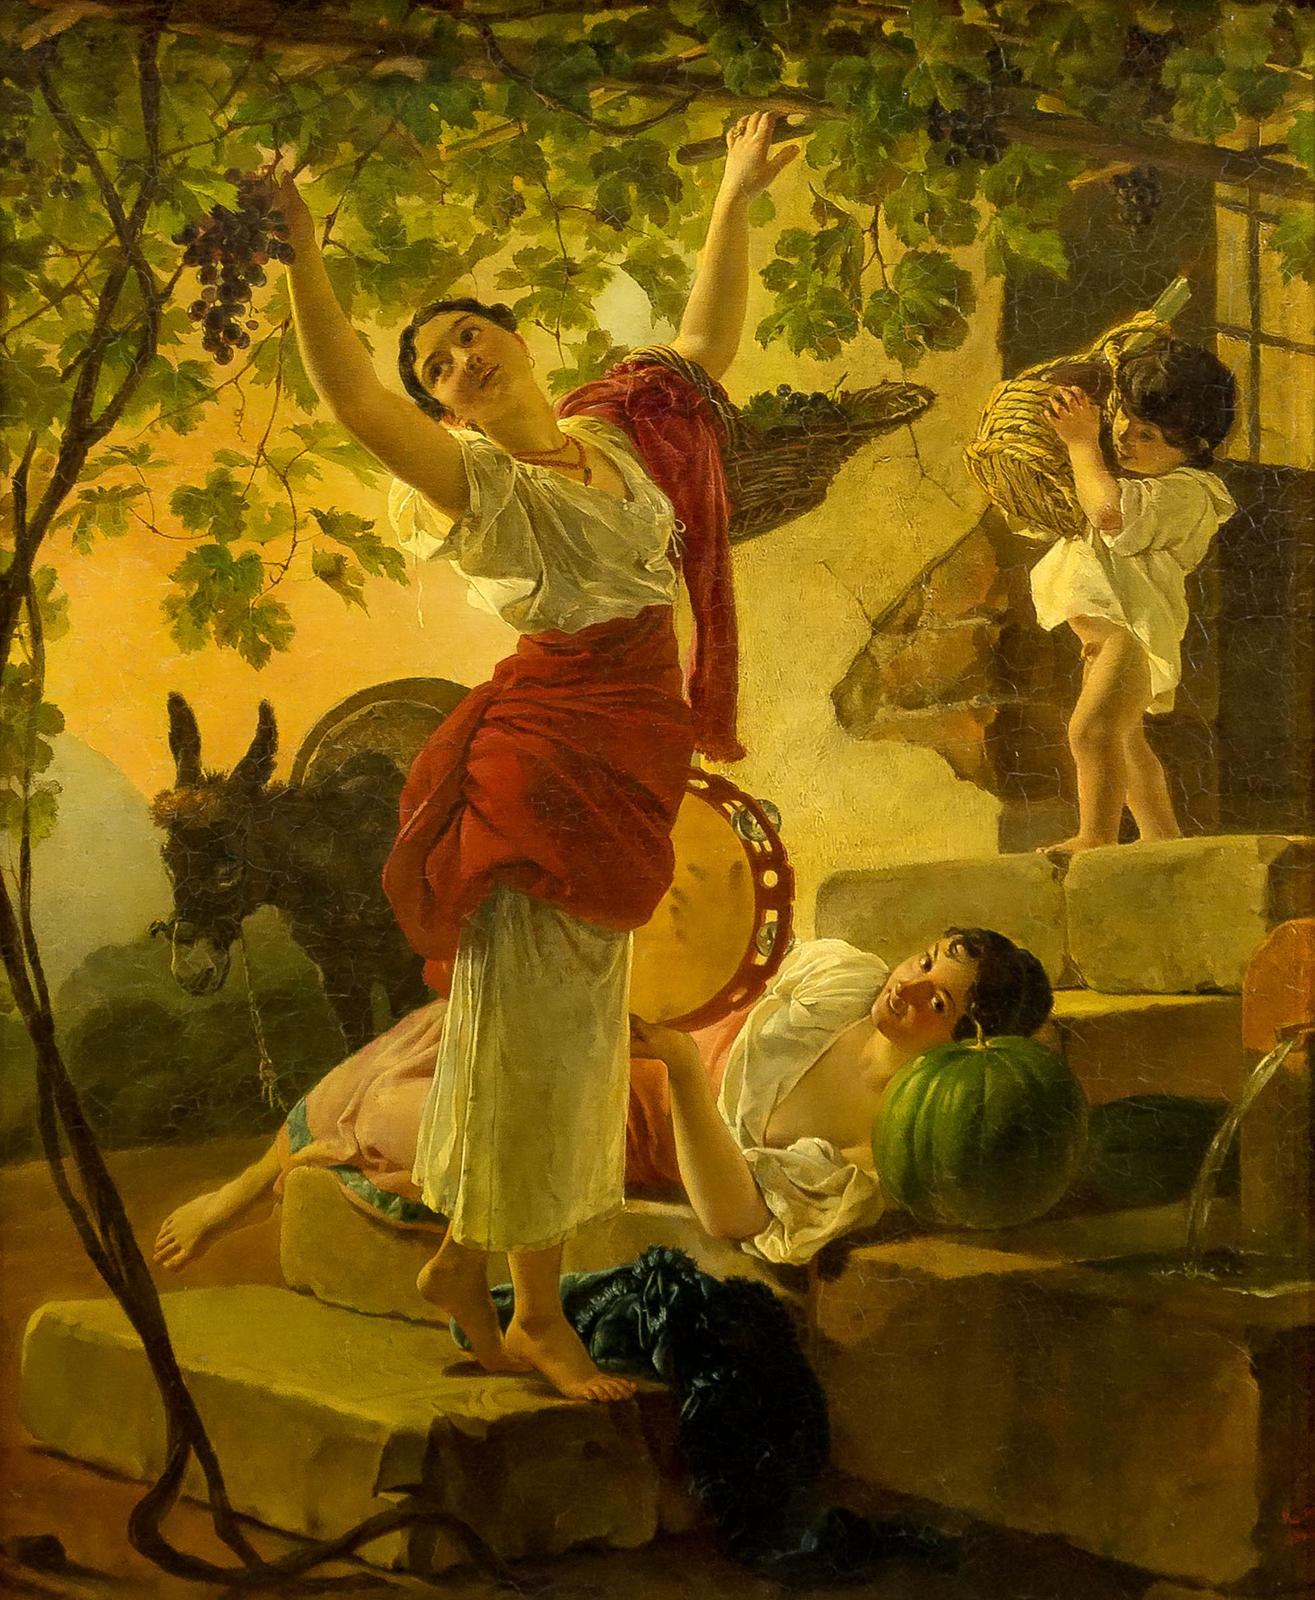 Фото №878698. Девушка, собирающая виноград в окрестностях Неаполя. 1827. Брюллов К.П.